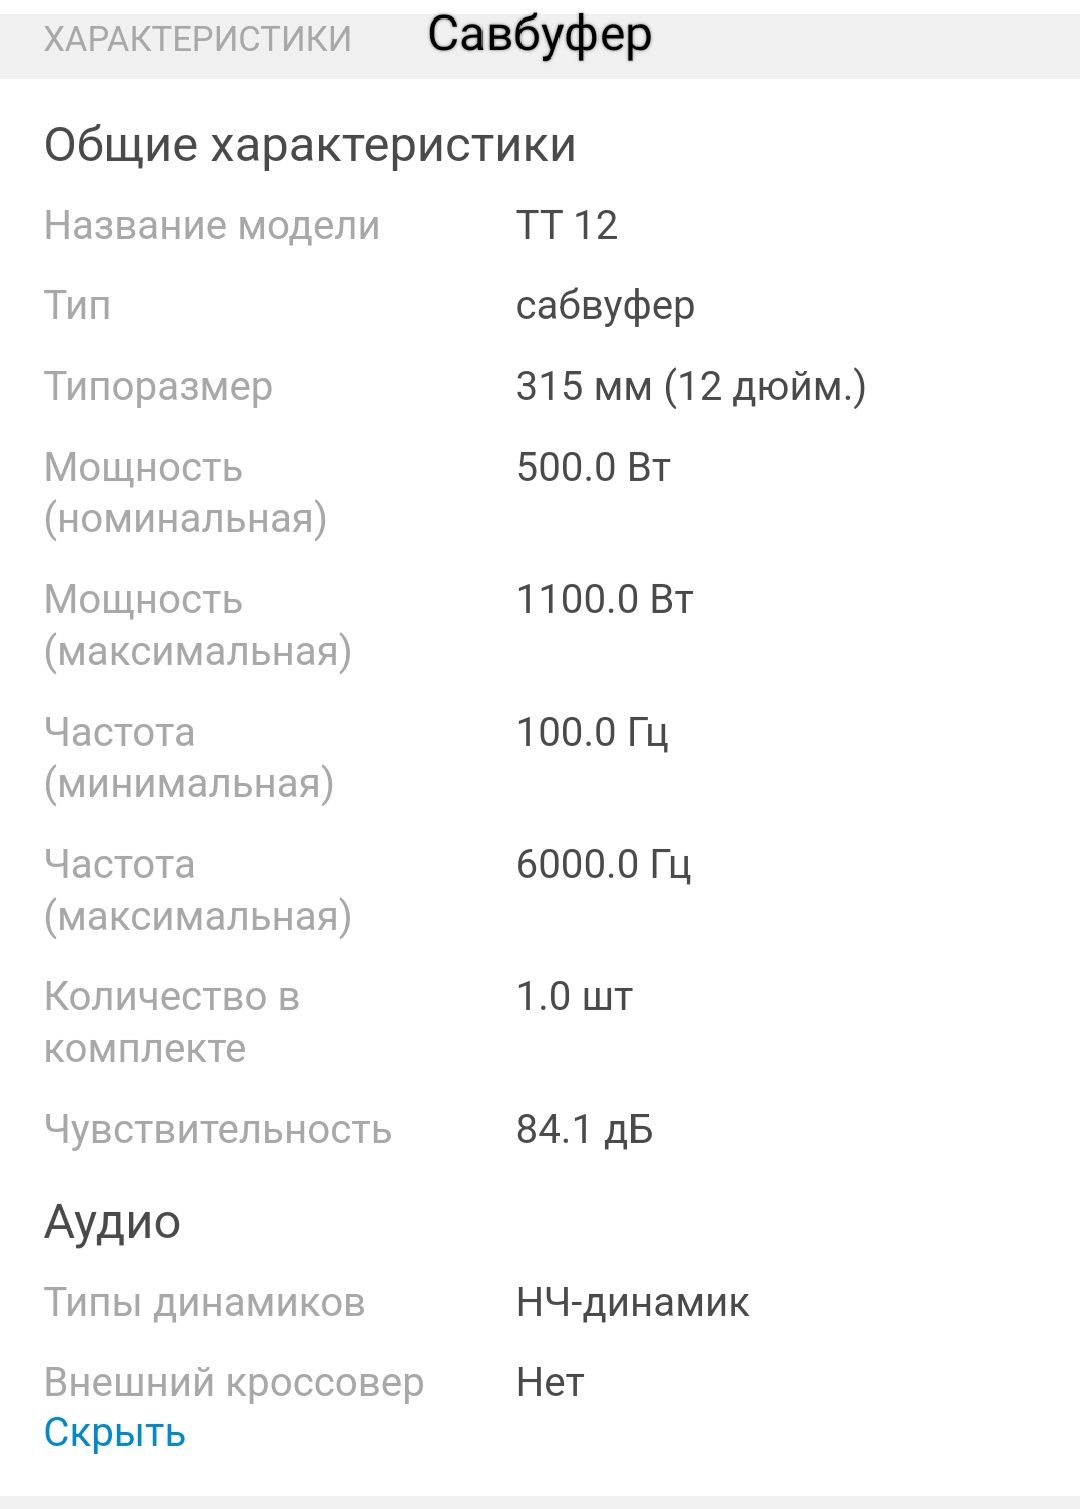 Савбуфер Урал ТТ 12  Усилитель DL Audio  1.900.